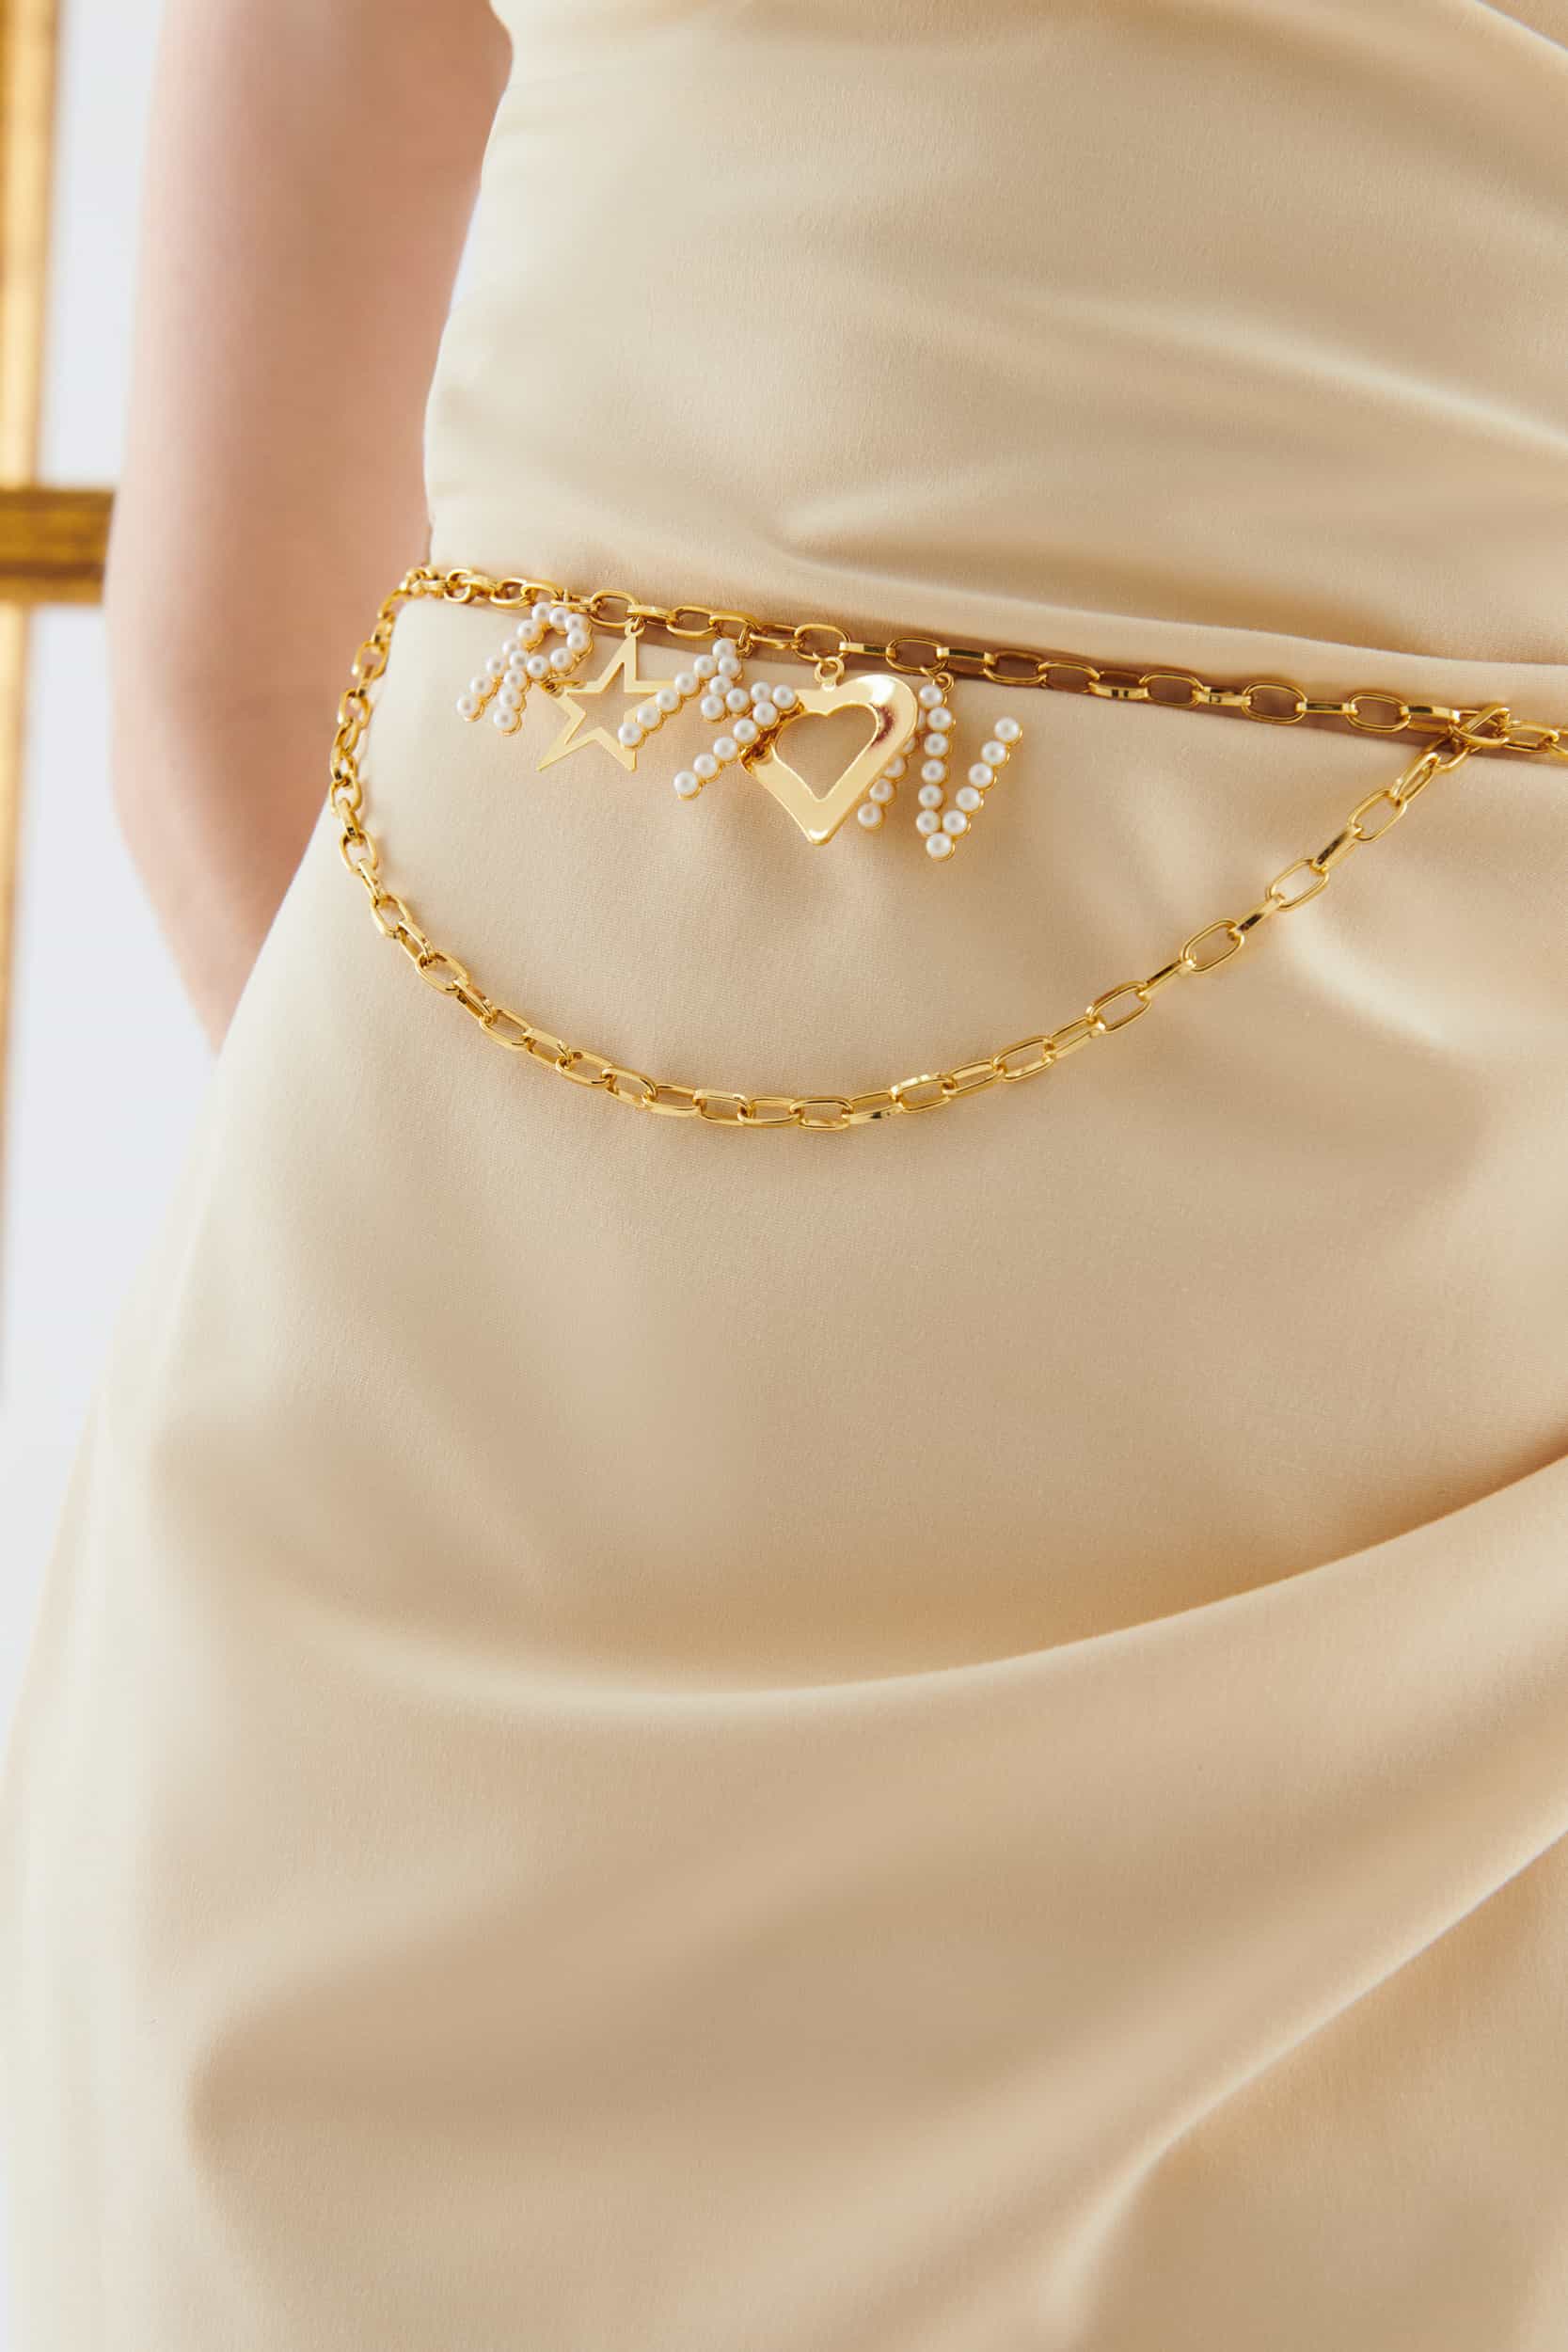 Women's Gold Chain Waist Belt